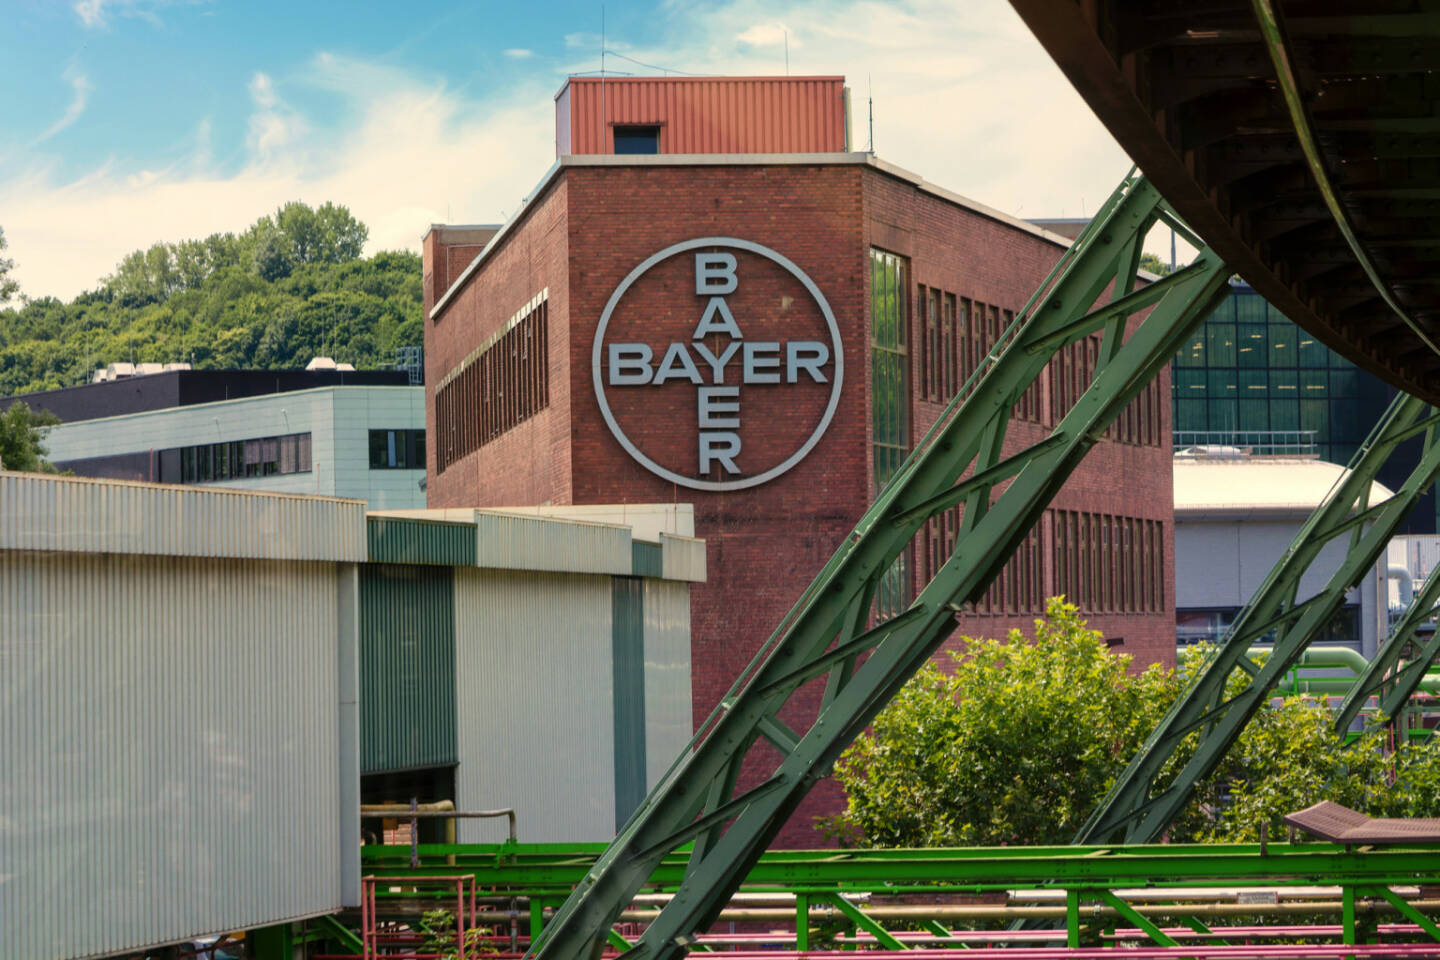 Bayer Werk in Wuppertal Elberfeld - https://de.depositphotos.com/202980614/stock-photo-wuppertal-nrw-germany-july-2017.html